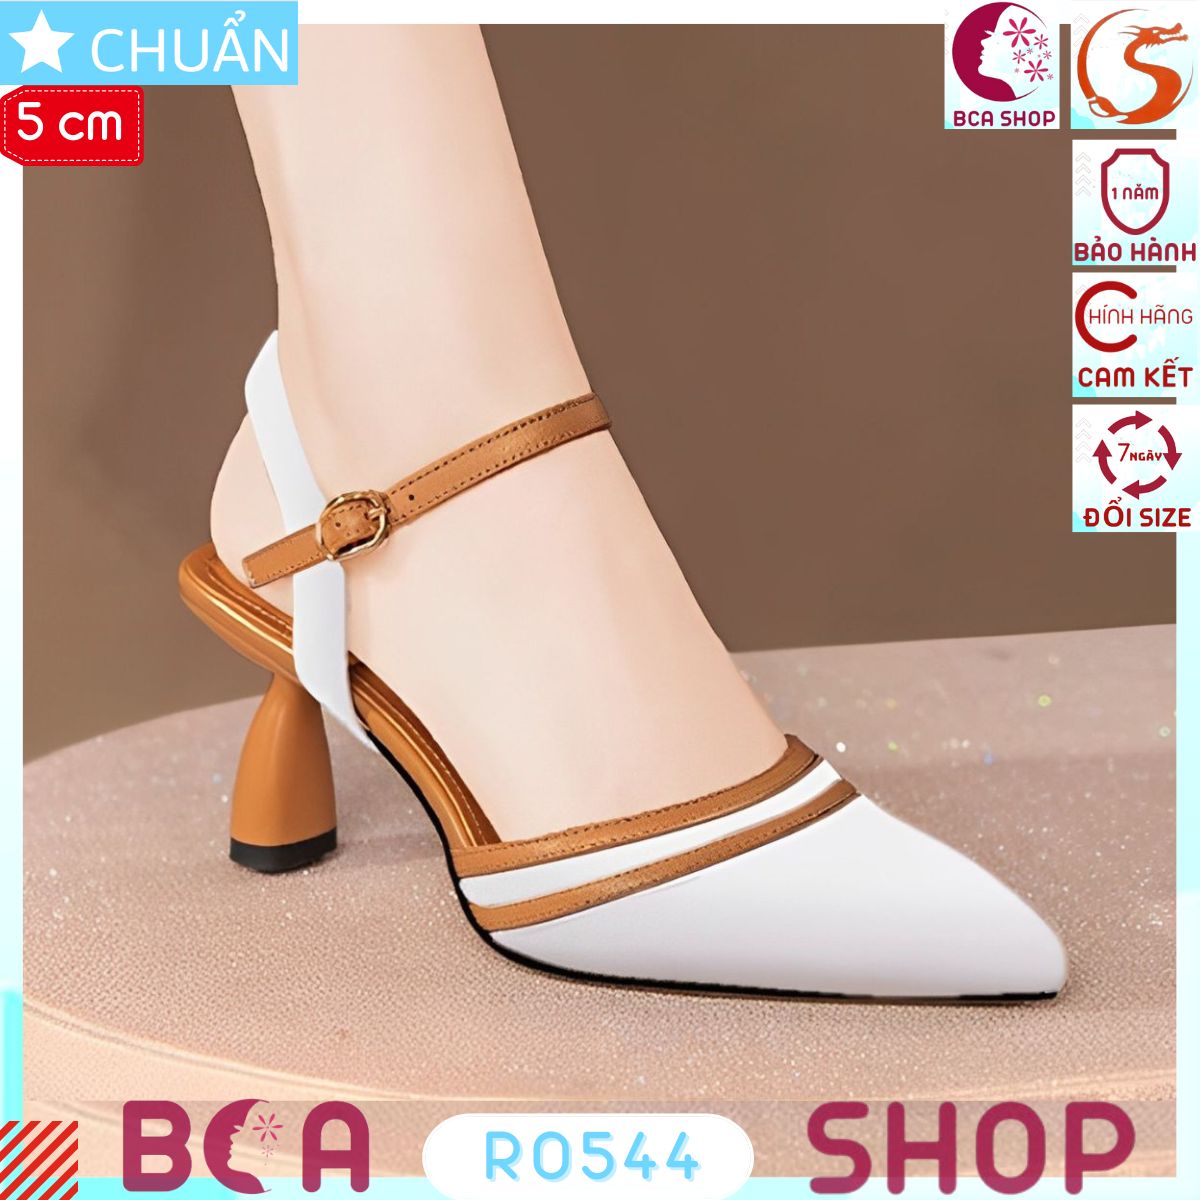 Giày cao gót nữ màu trắng RO544 ROSATA tại BCASHOP phối màu sành điệu và thời trang, gót dấu phẩy độc đáo và lạ mắt